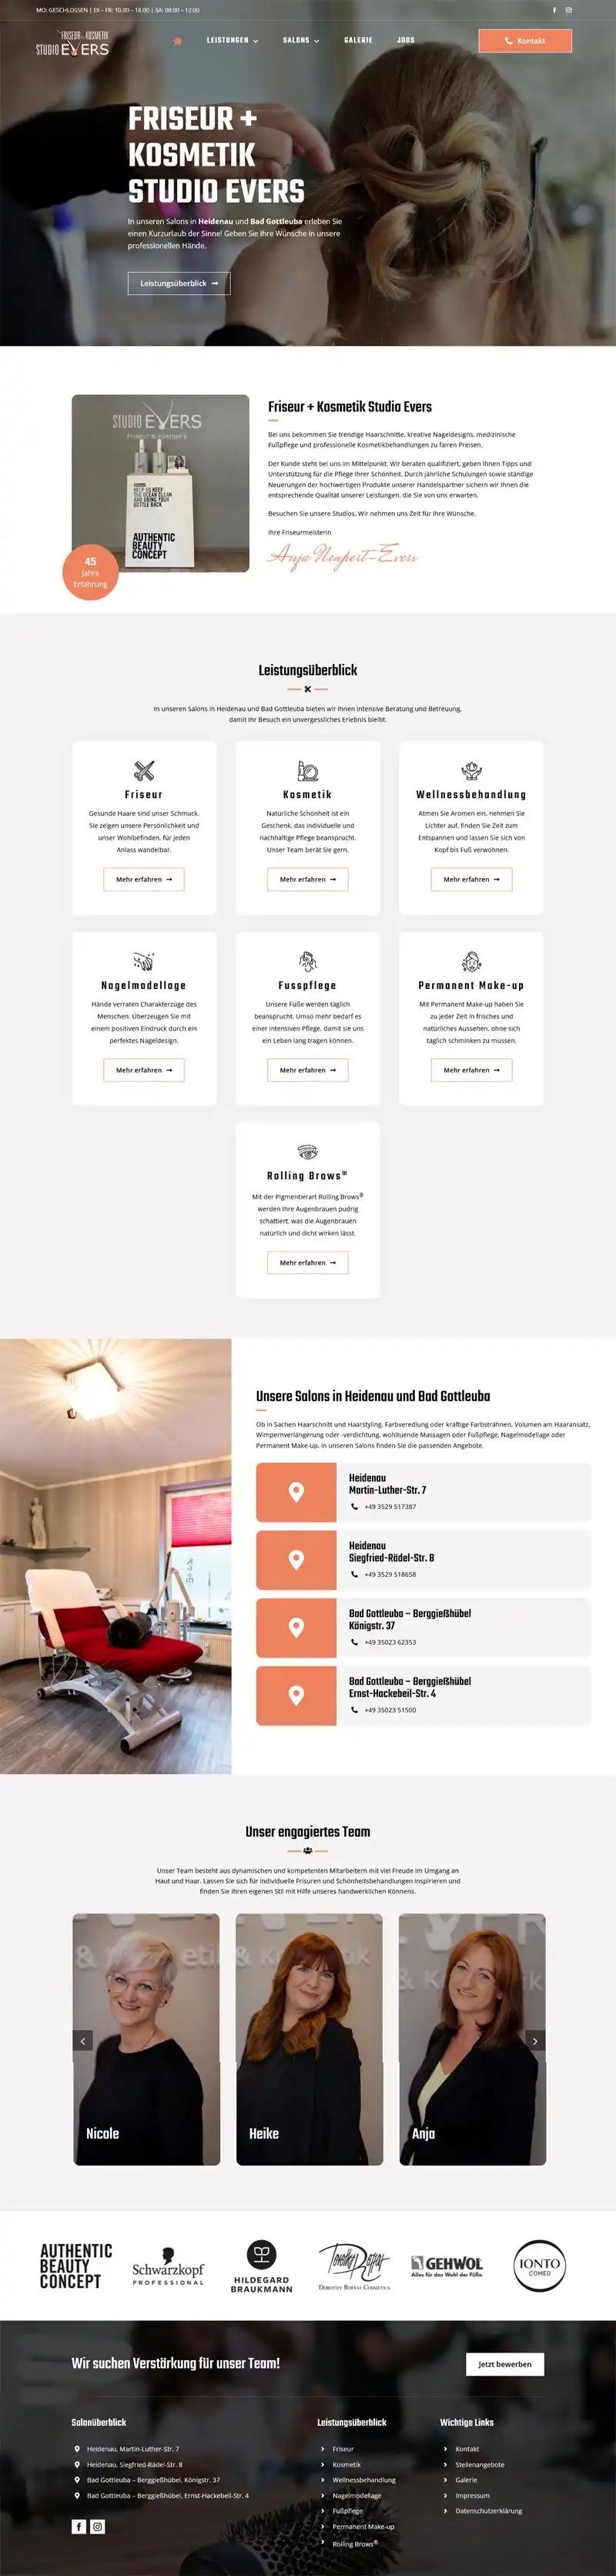 Studio Evers Friseur + Kosmetik - Screenshot Fullsize Startseite